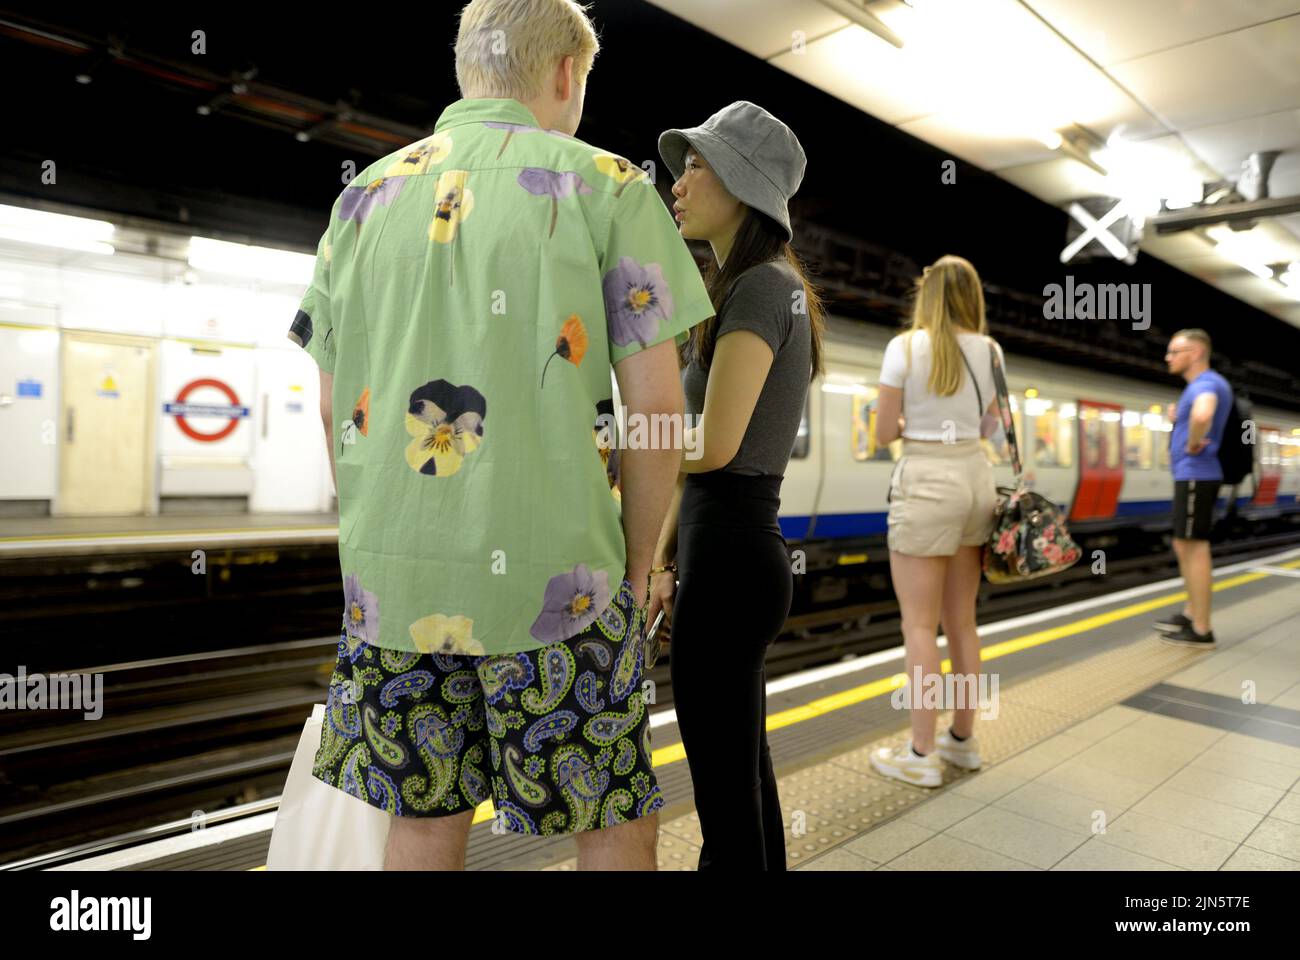 Londres, Angleterre, Royaume-Uni. Personnes attendant sur la plate-forme d'une station de métro Banque D'Images